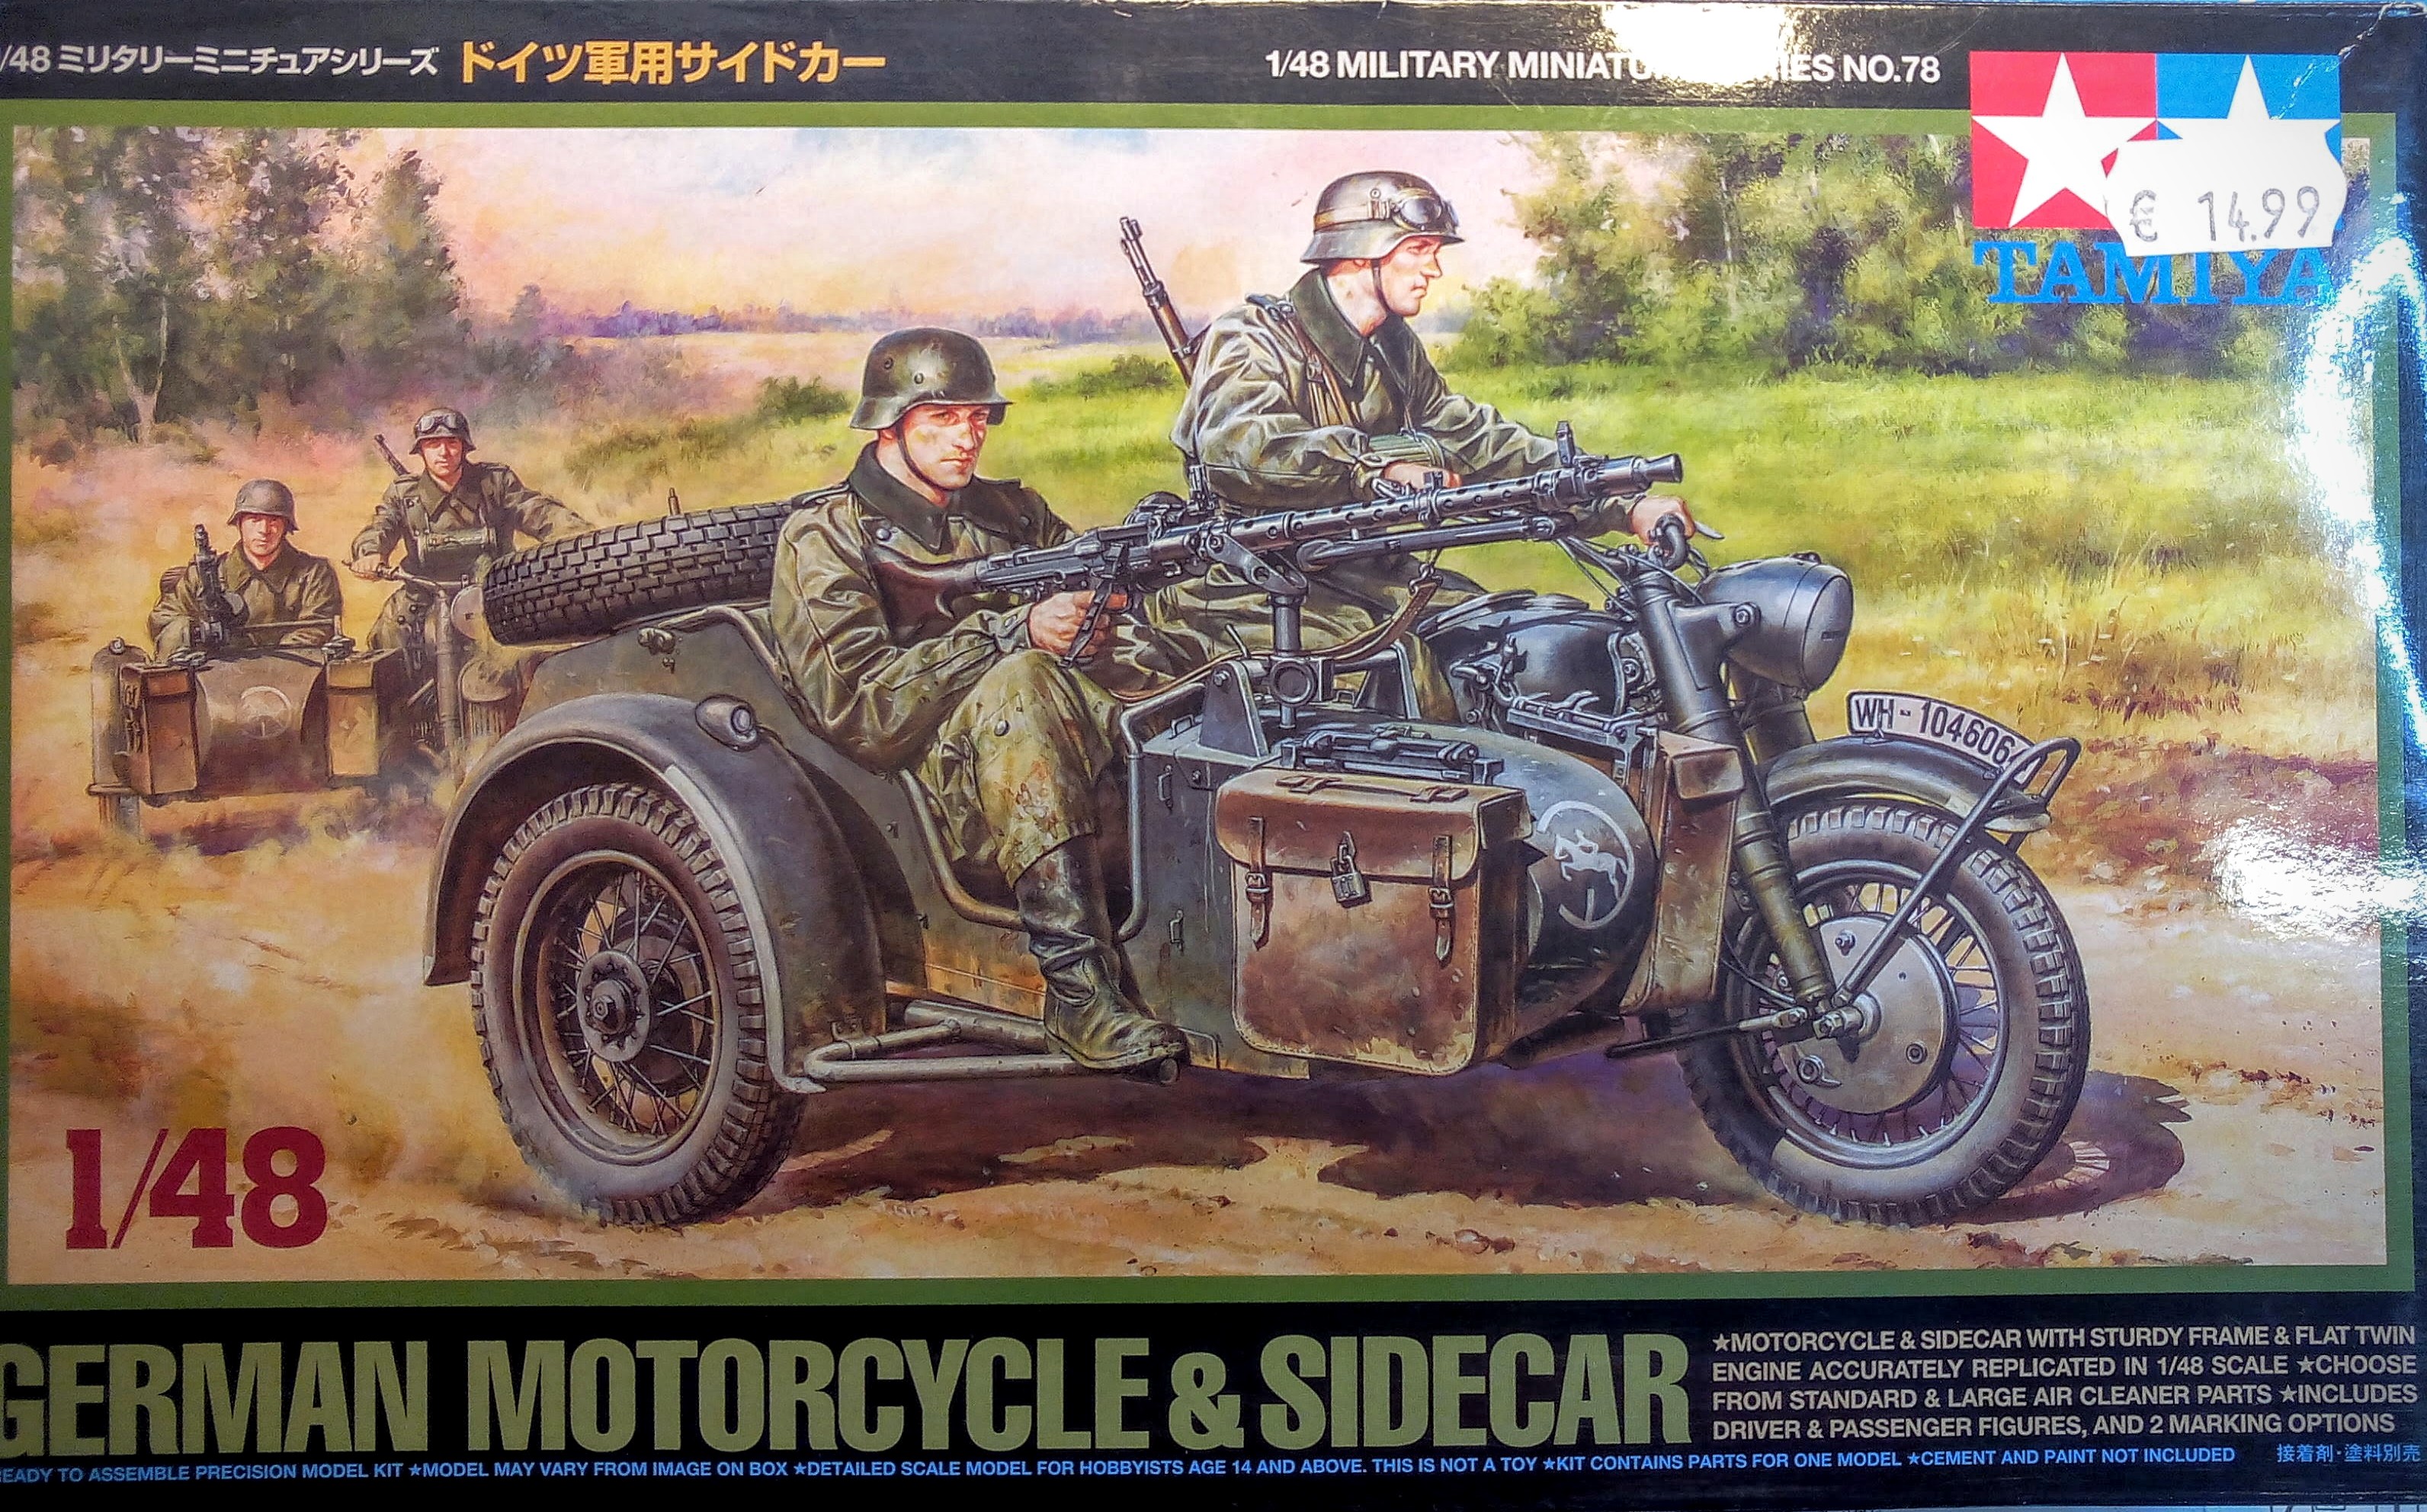 German Motorcycle & sidecar